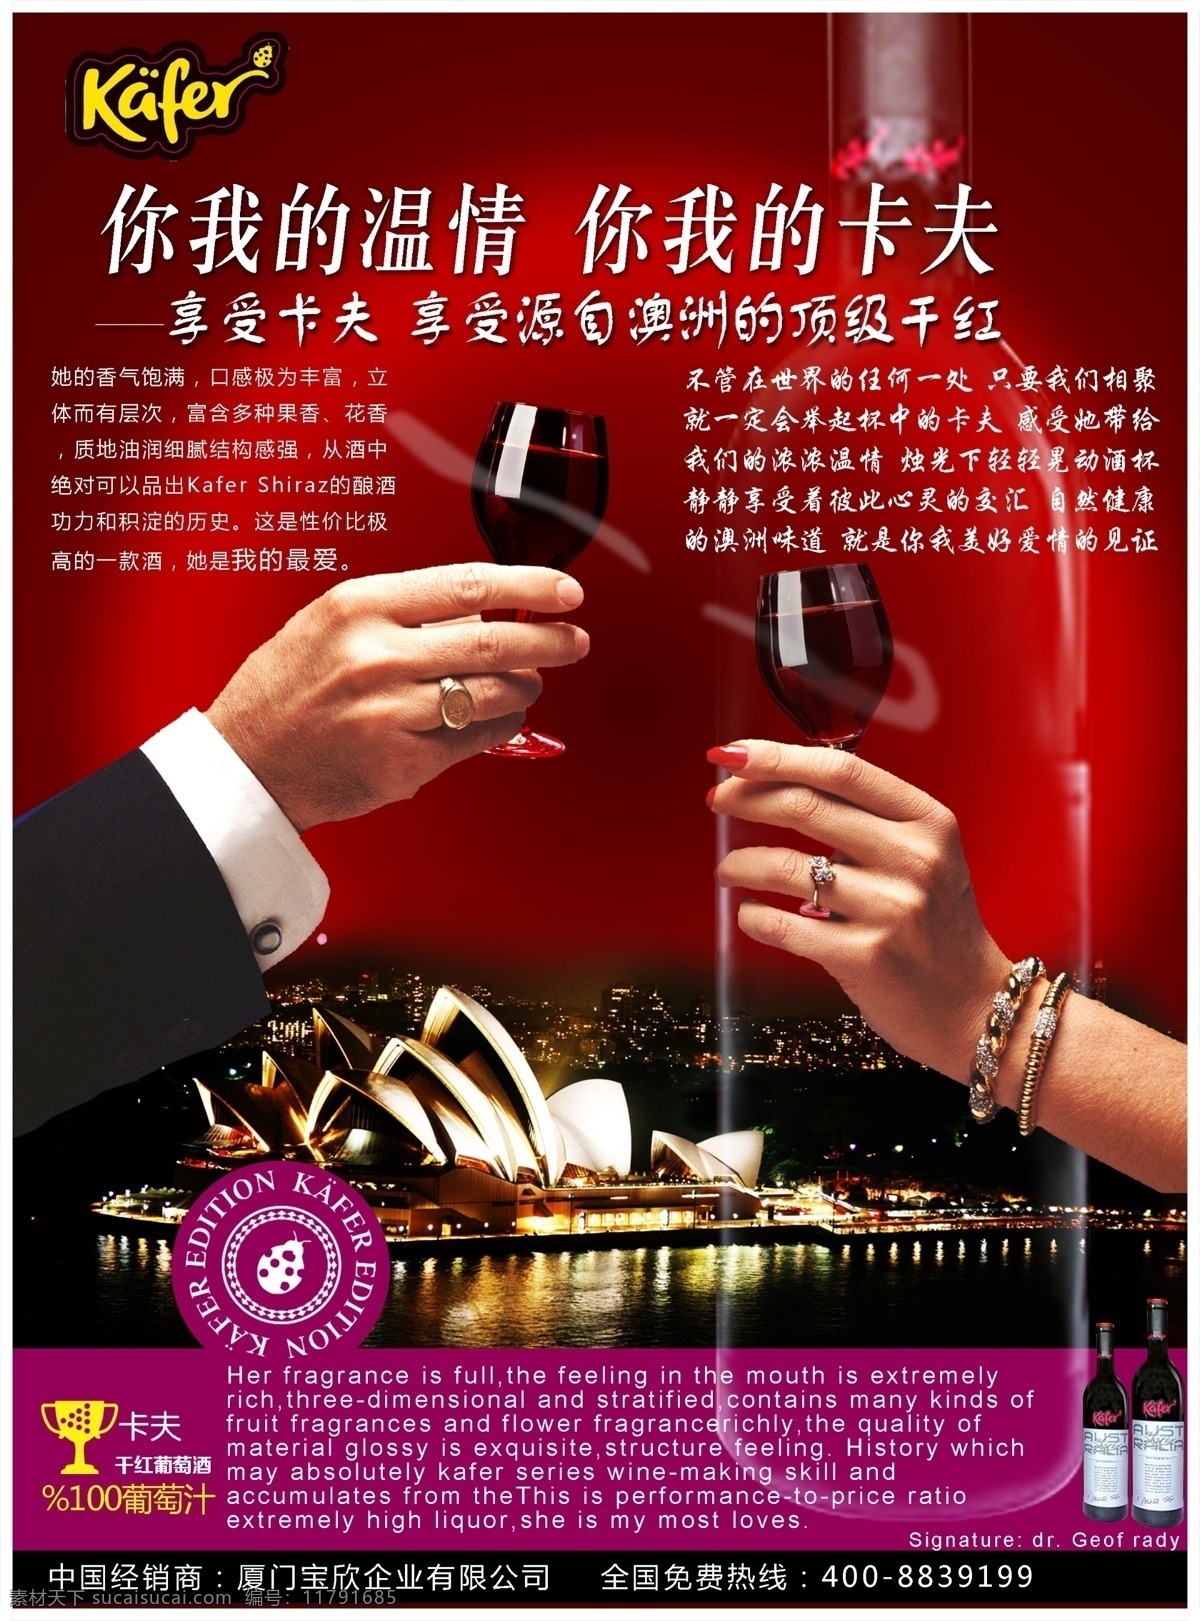 高端 葡萄酒 广告 海报 白葡萄酒 干红葡萄酒 红葡萄酒 酒 葡萄酒广告 葡萄酒瓶 卡夫葡萄酒 葡萄酒庄园 法国葡萄酒 原创设计 原创海报